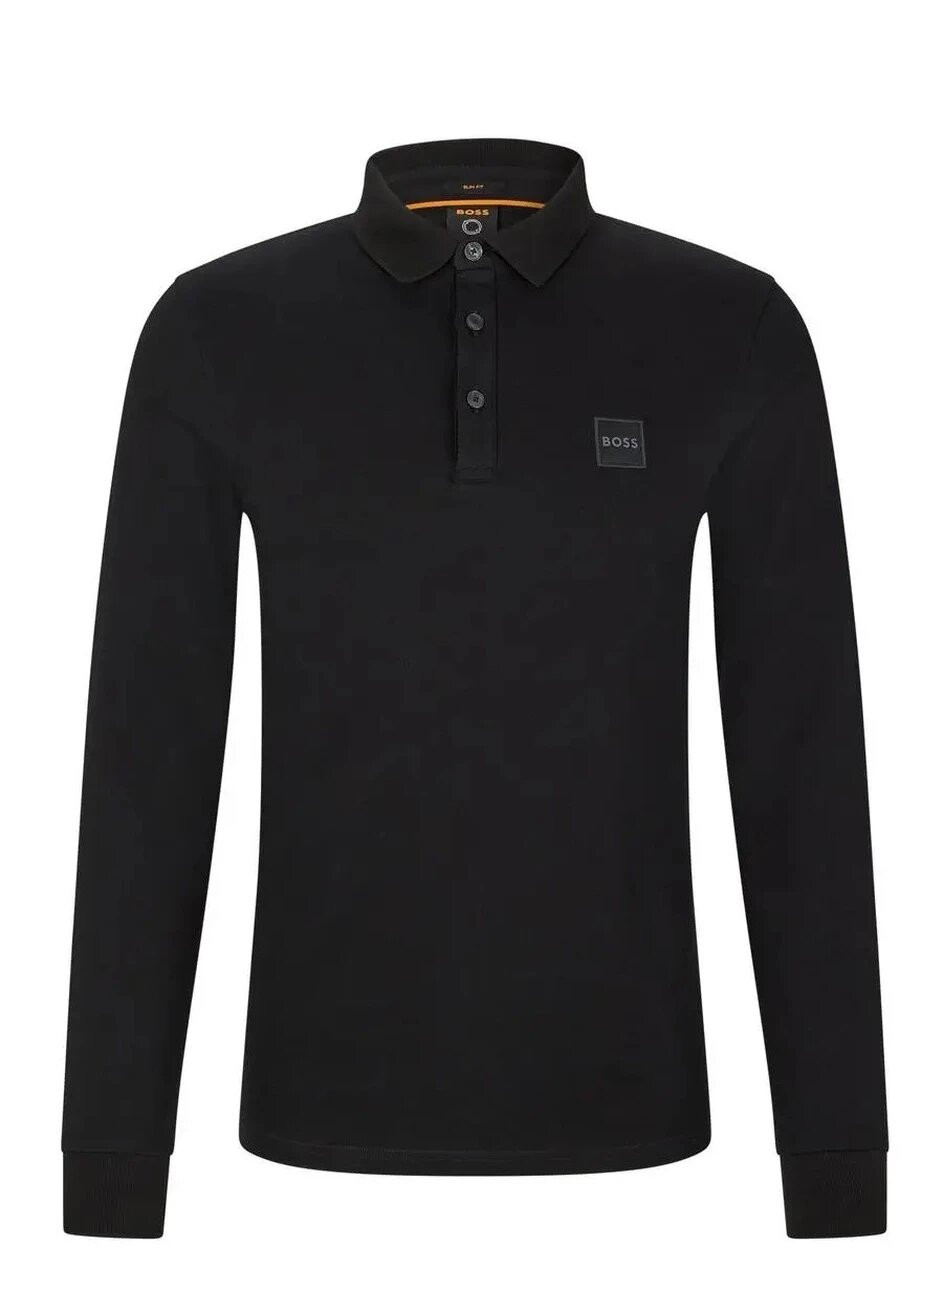 Черная футболка-поло мужское с длинным рукавом для мужчин Hugo Boss с логотипом